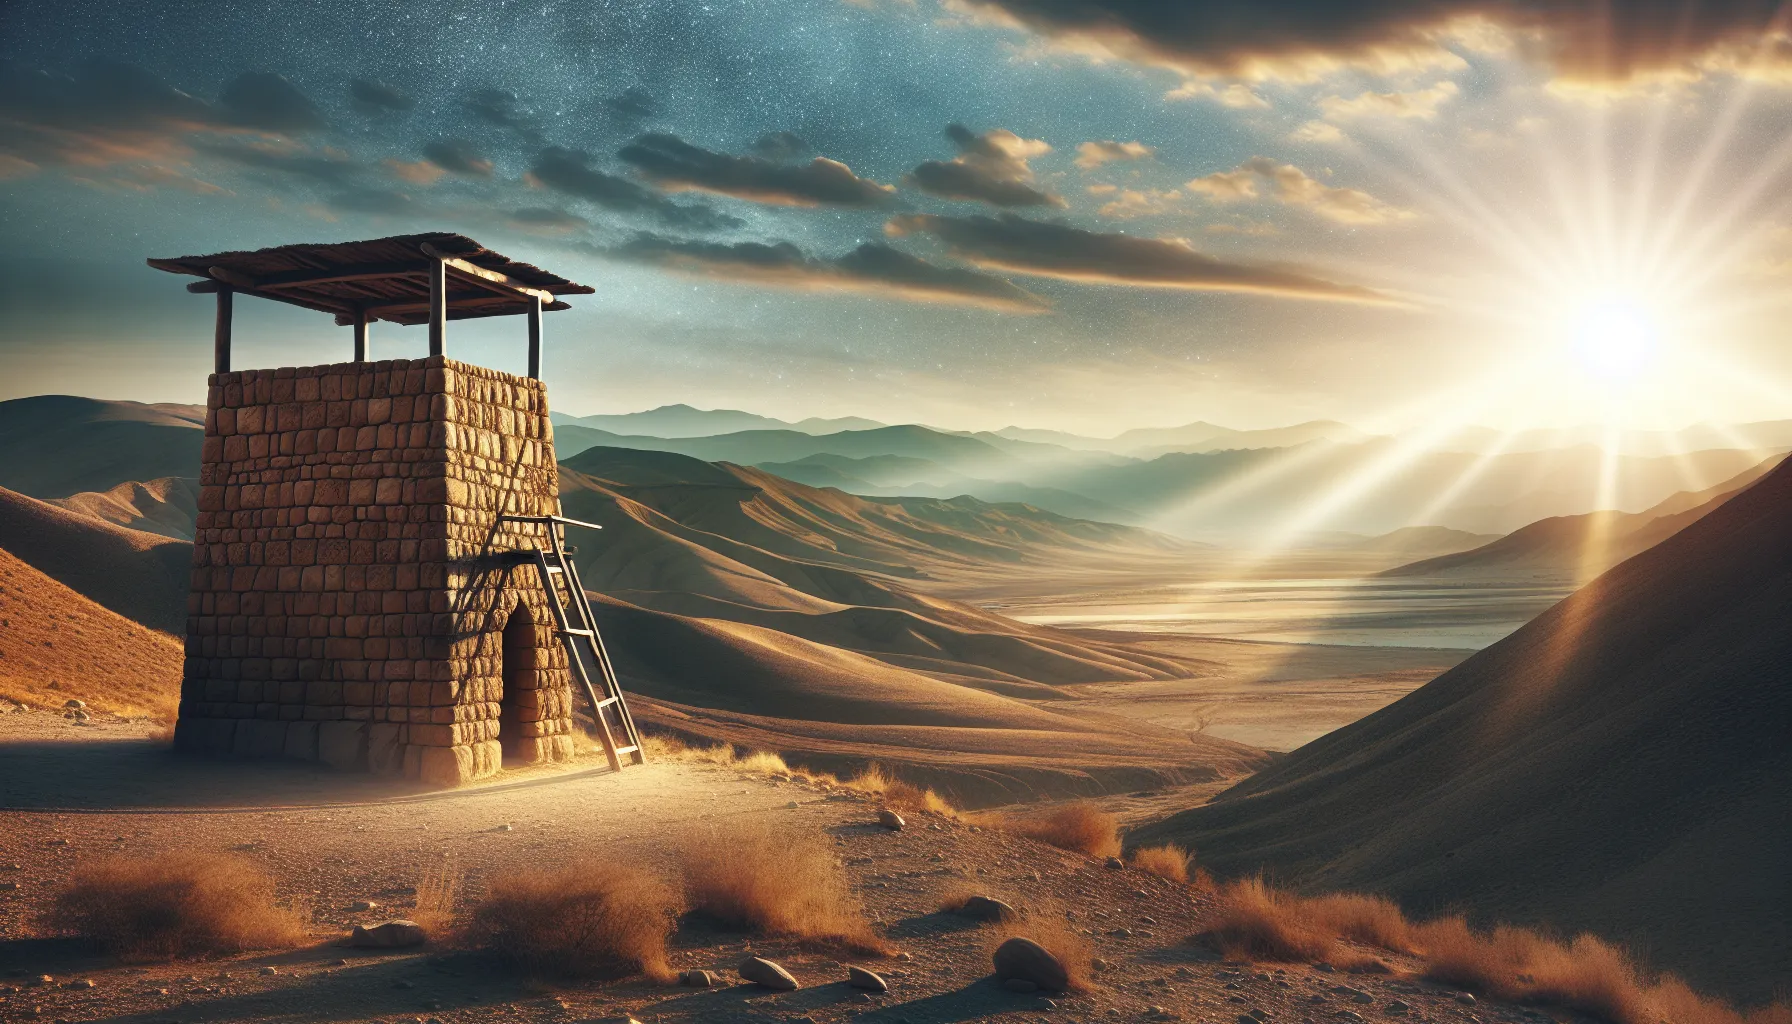 Imagen ilustrativa de una atalaya en un paisaje bíblico